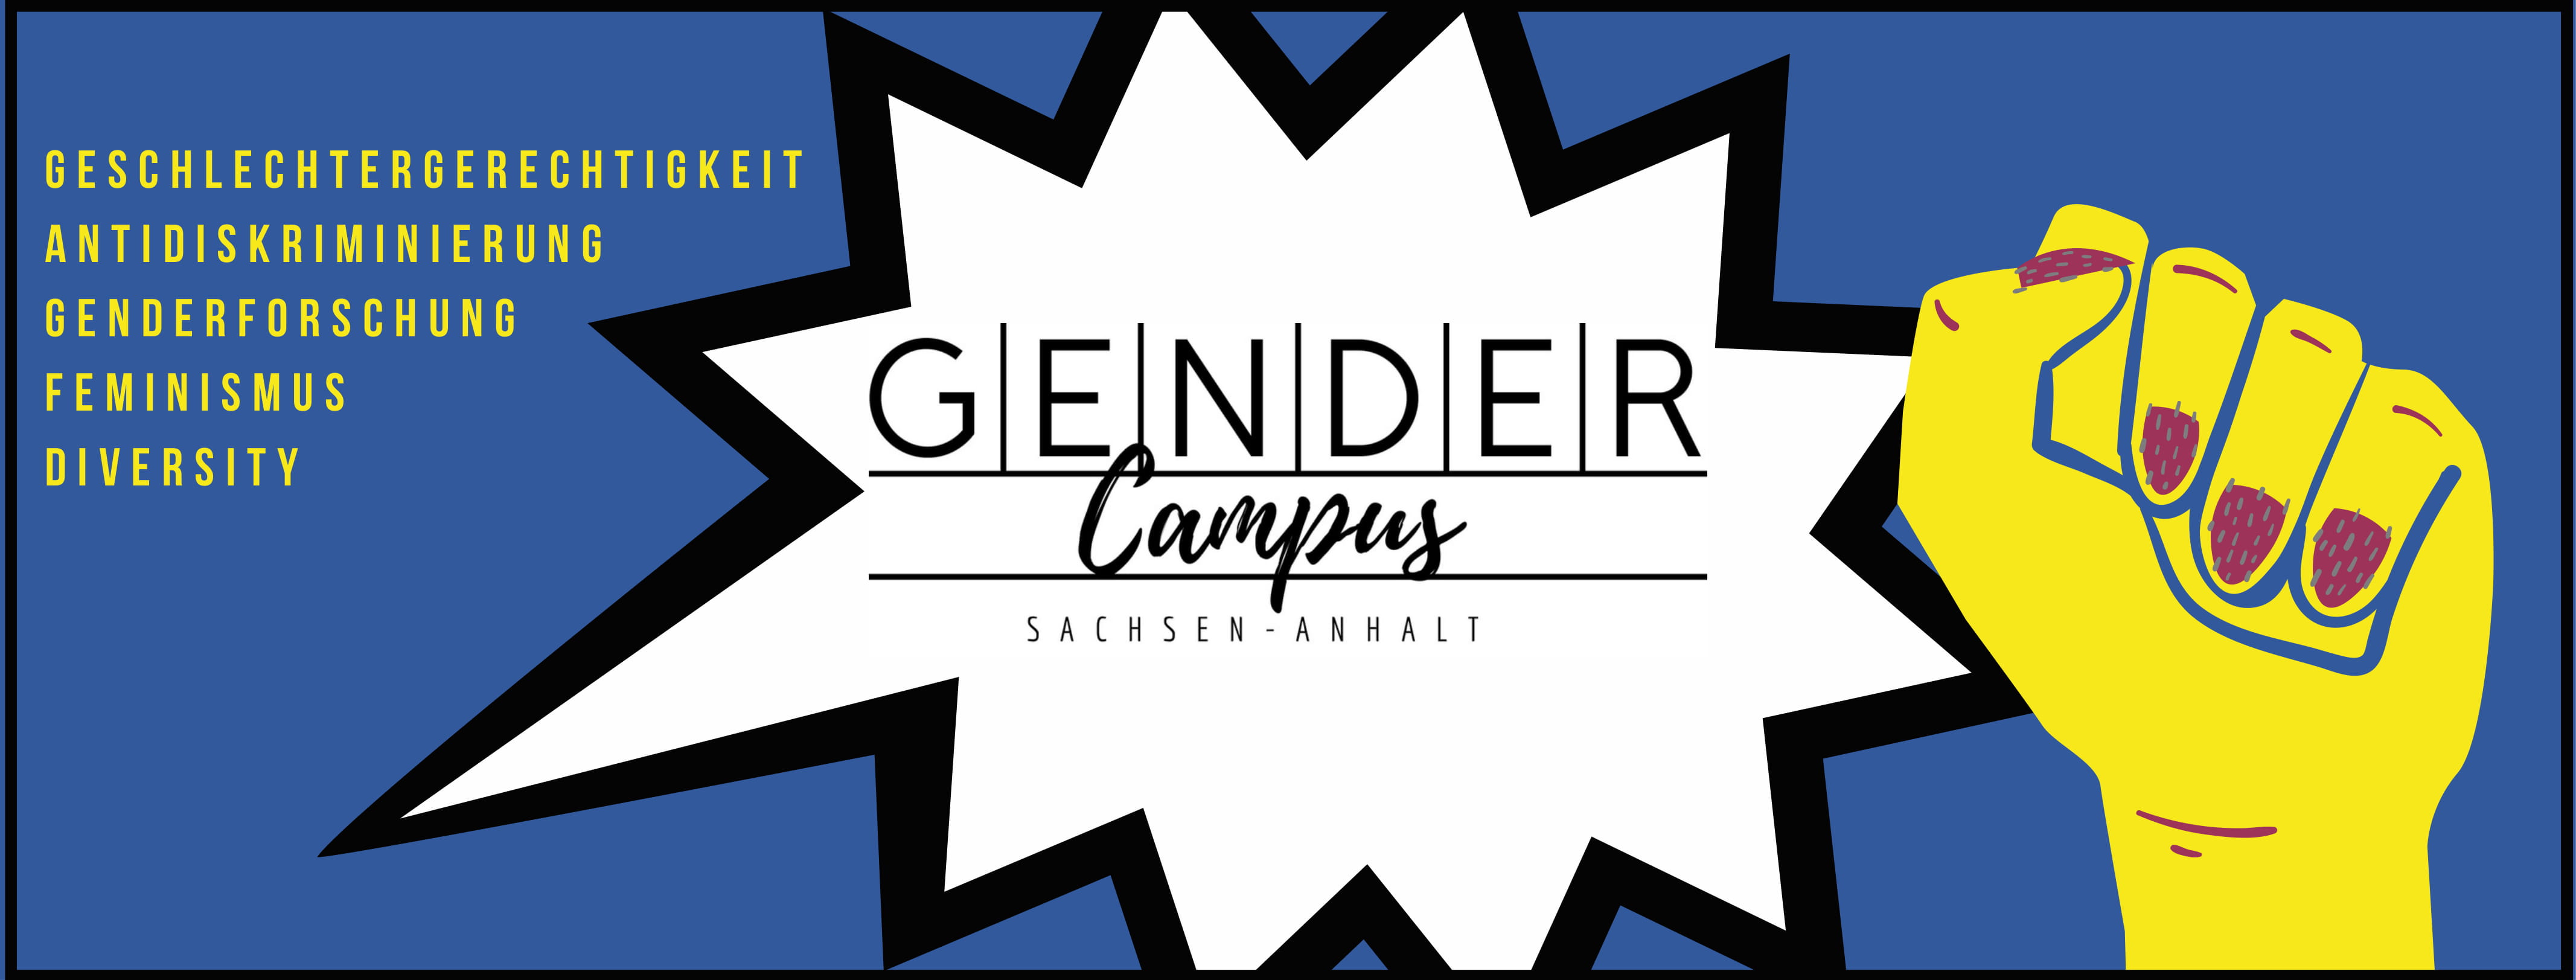 gendercampus_info_web_schmal